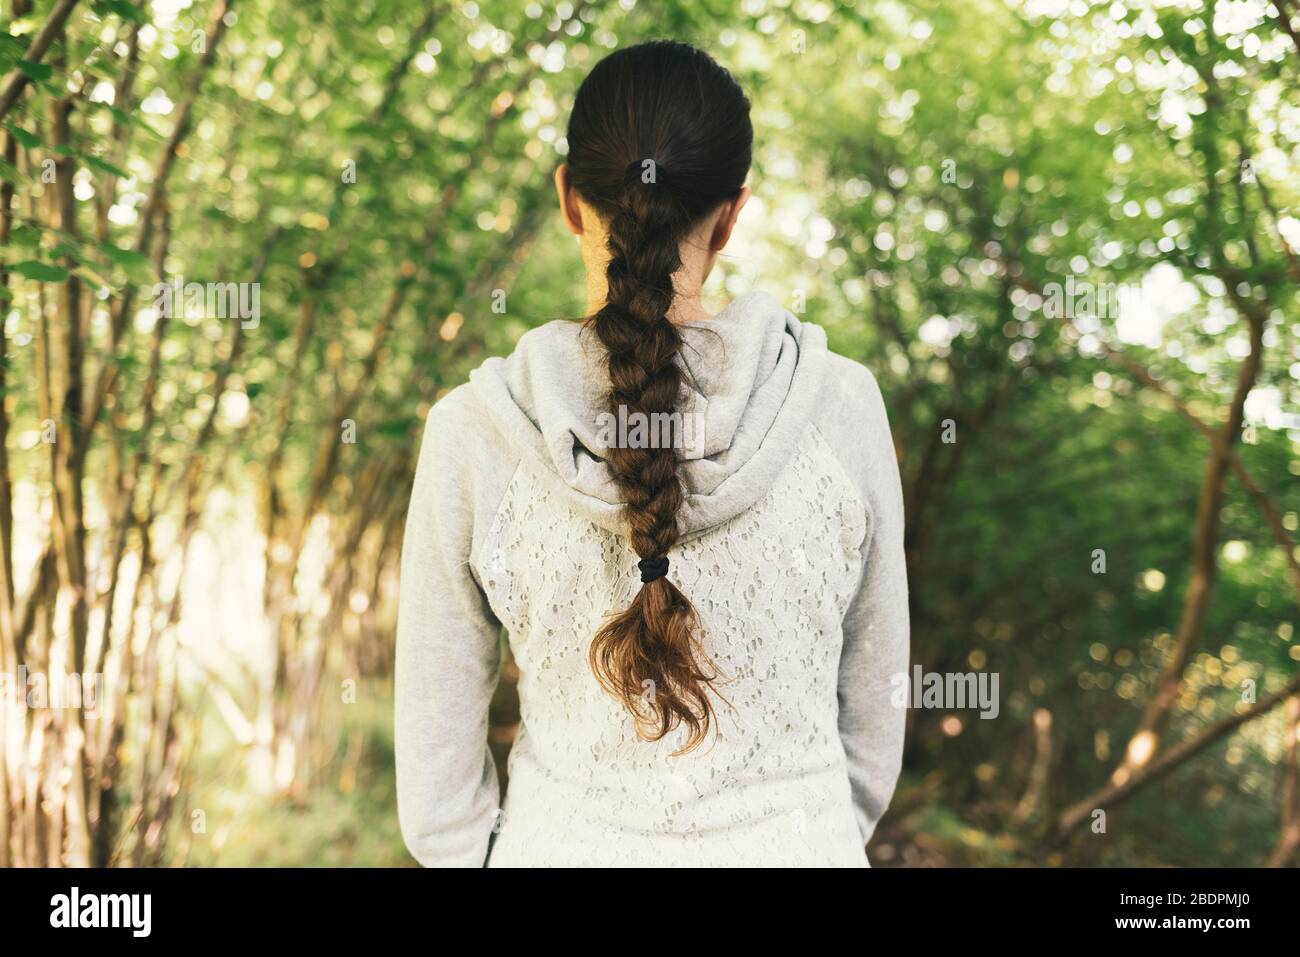 Junge Frau, die in der Natur spazieren geht und einen entspannenden Blick auf den Rücken hat, hat eine schöne frisierte Frisur, einen Blick auf den Rücken Stockfoto